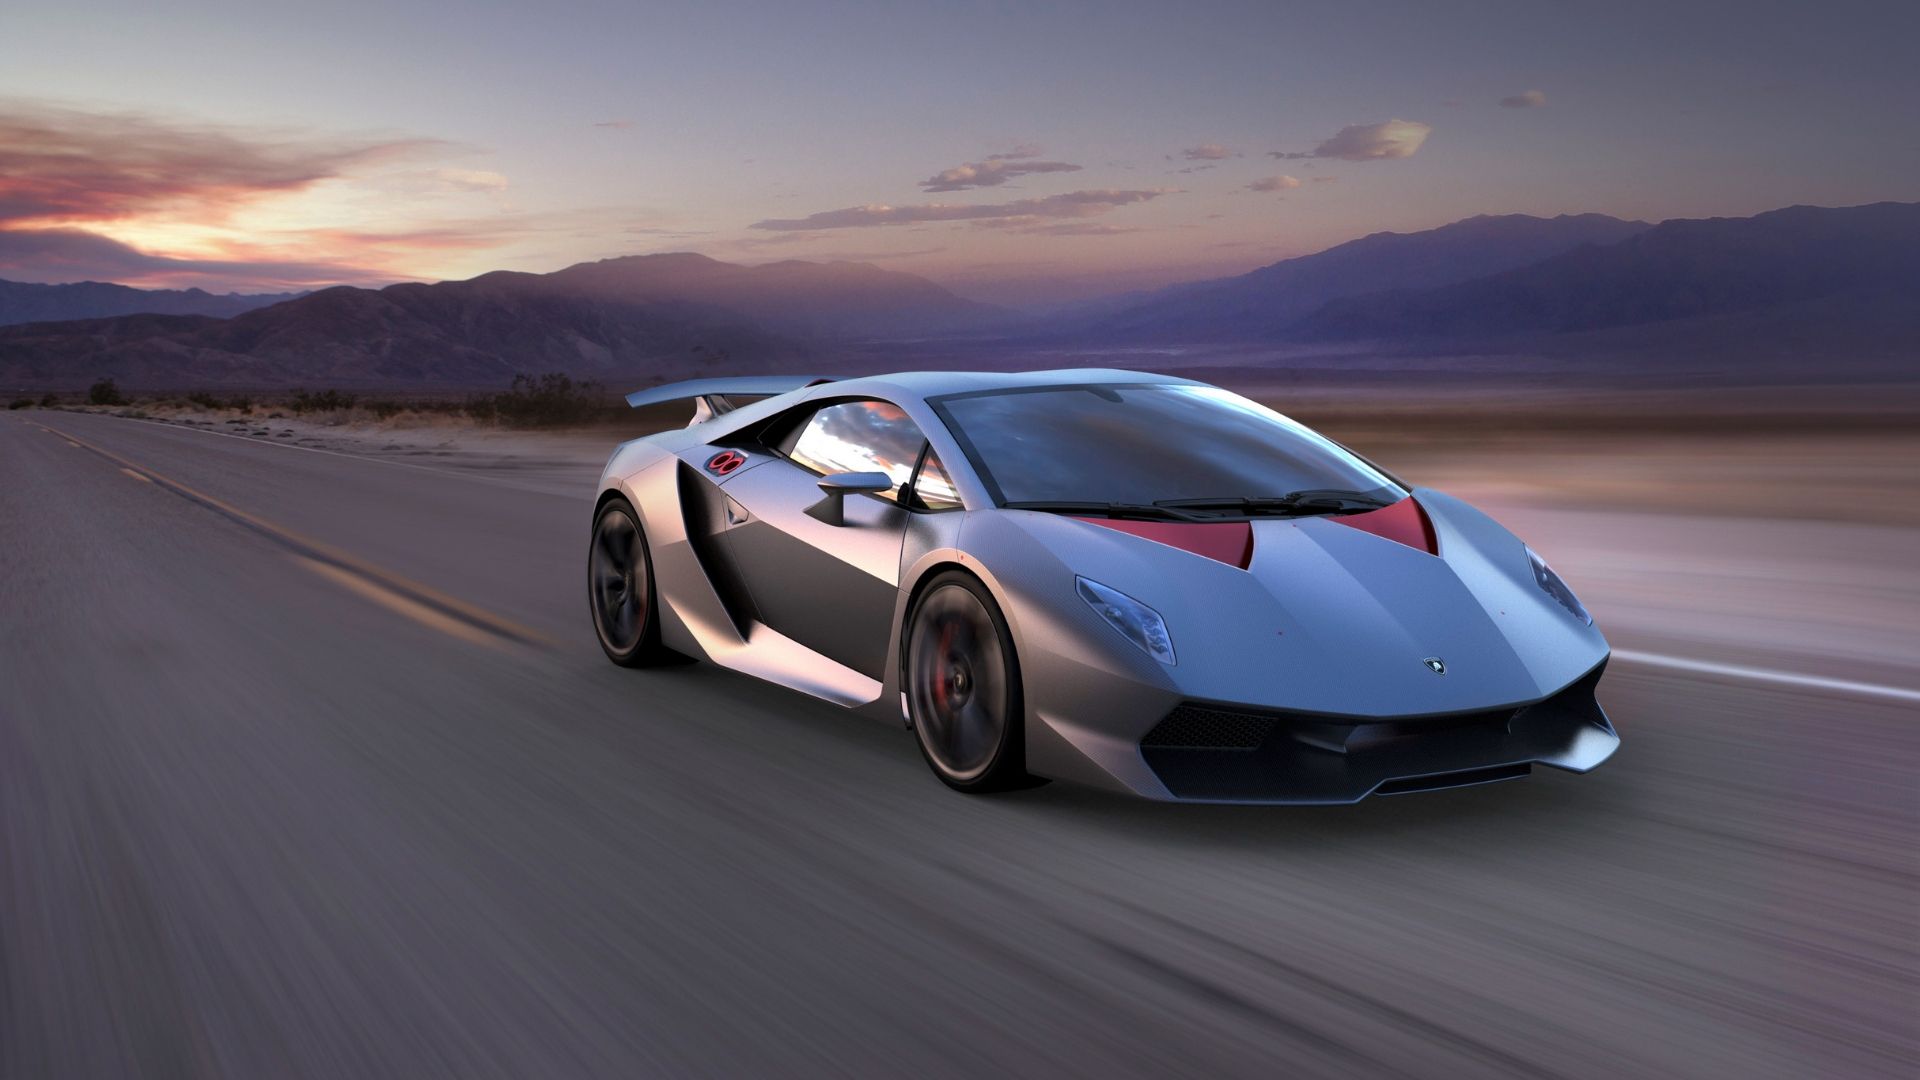 Lamborghini Sesto Elemento: the lightest few-off of all